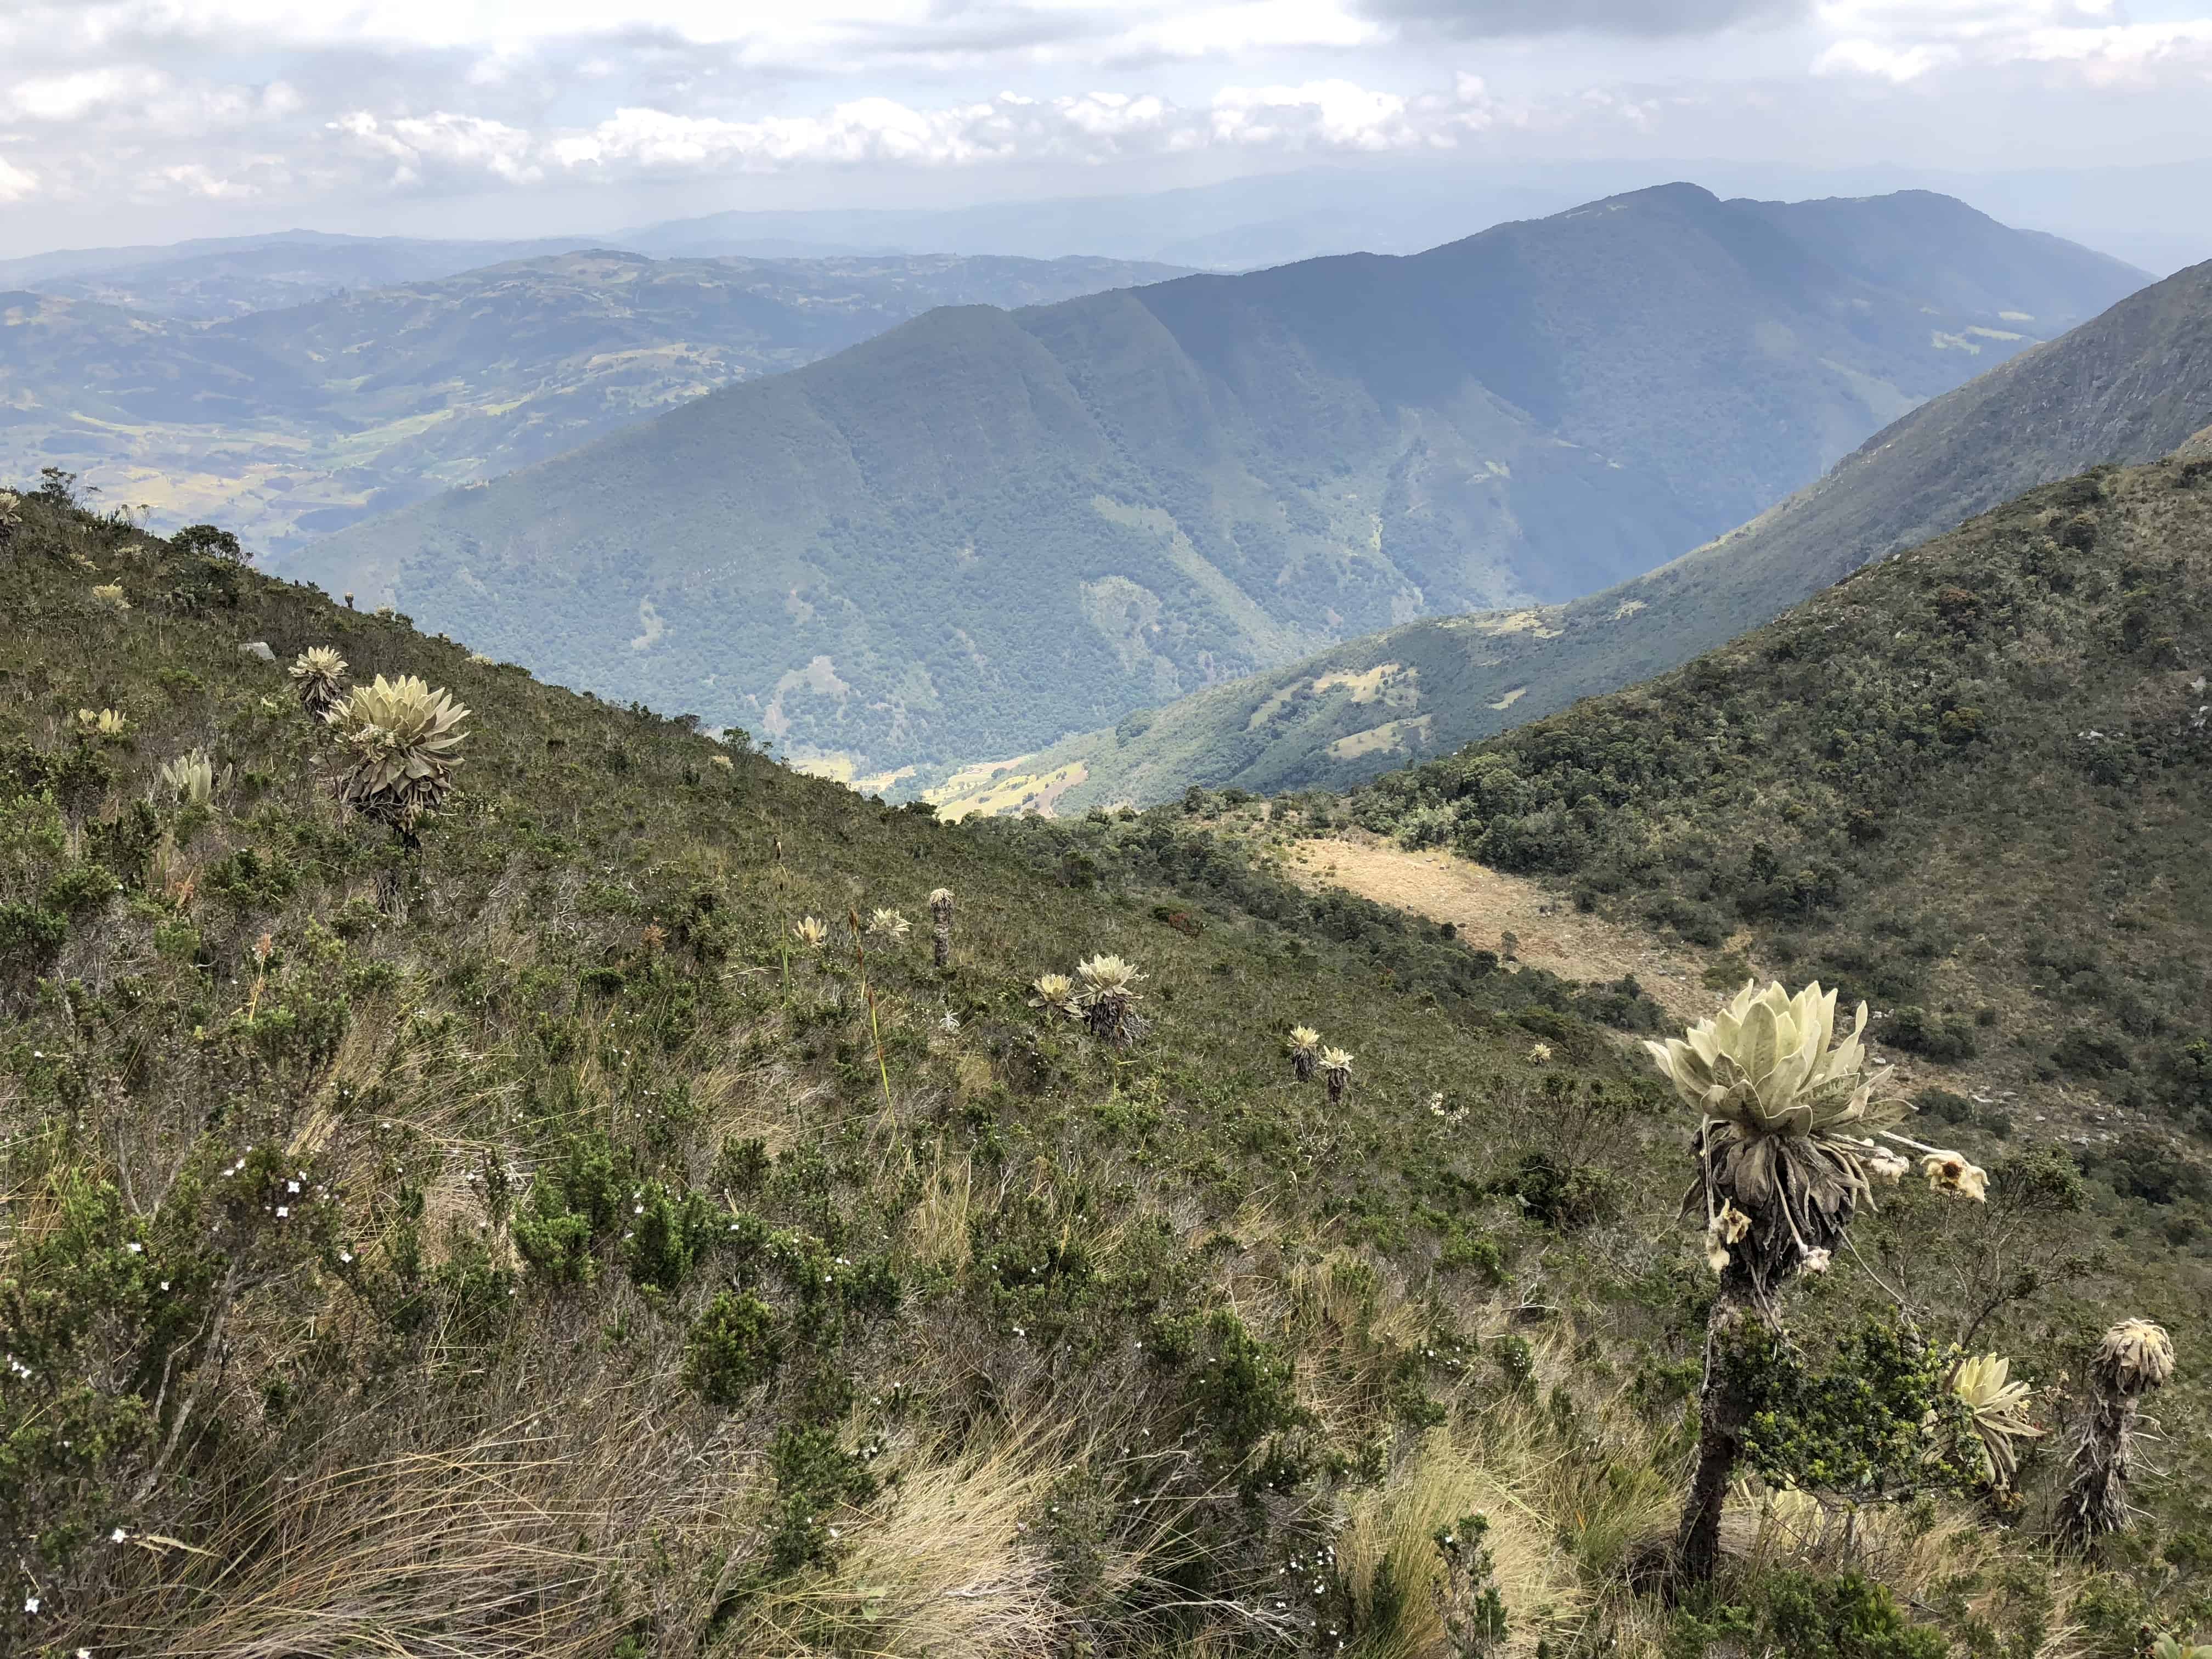 Views at Iguaque Flora and Fauna Sanctuary near Villa de Leyva, Boyacá, Colombia